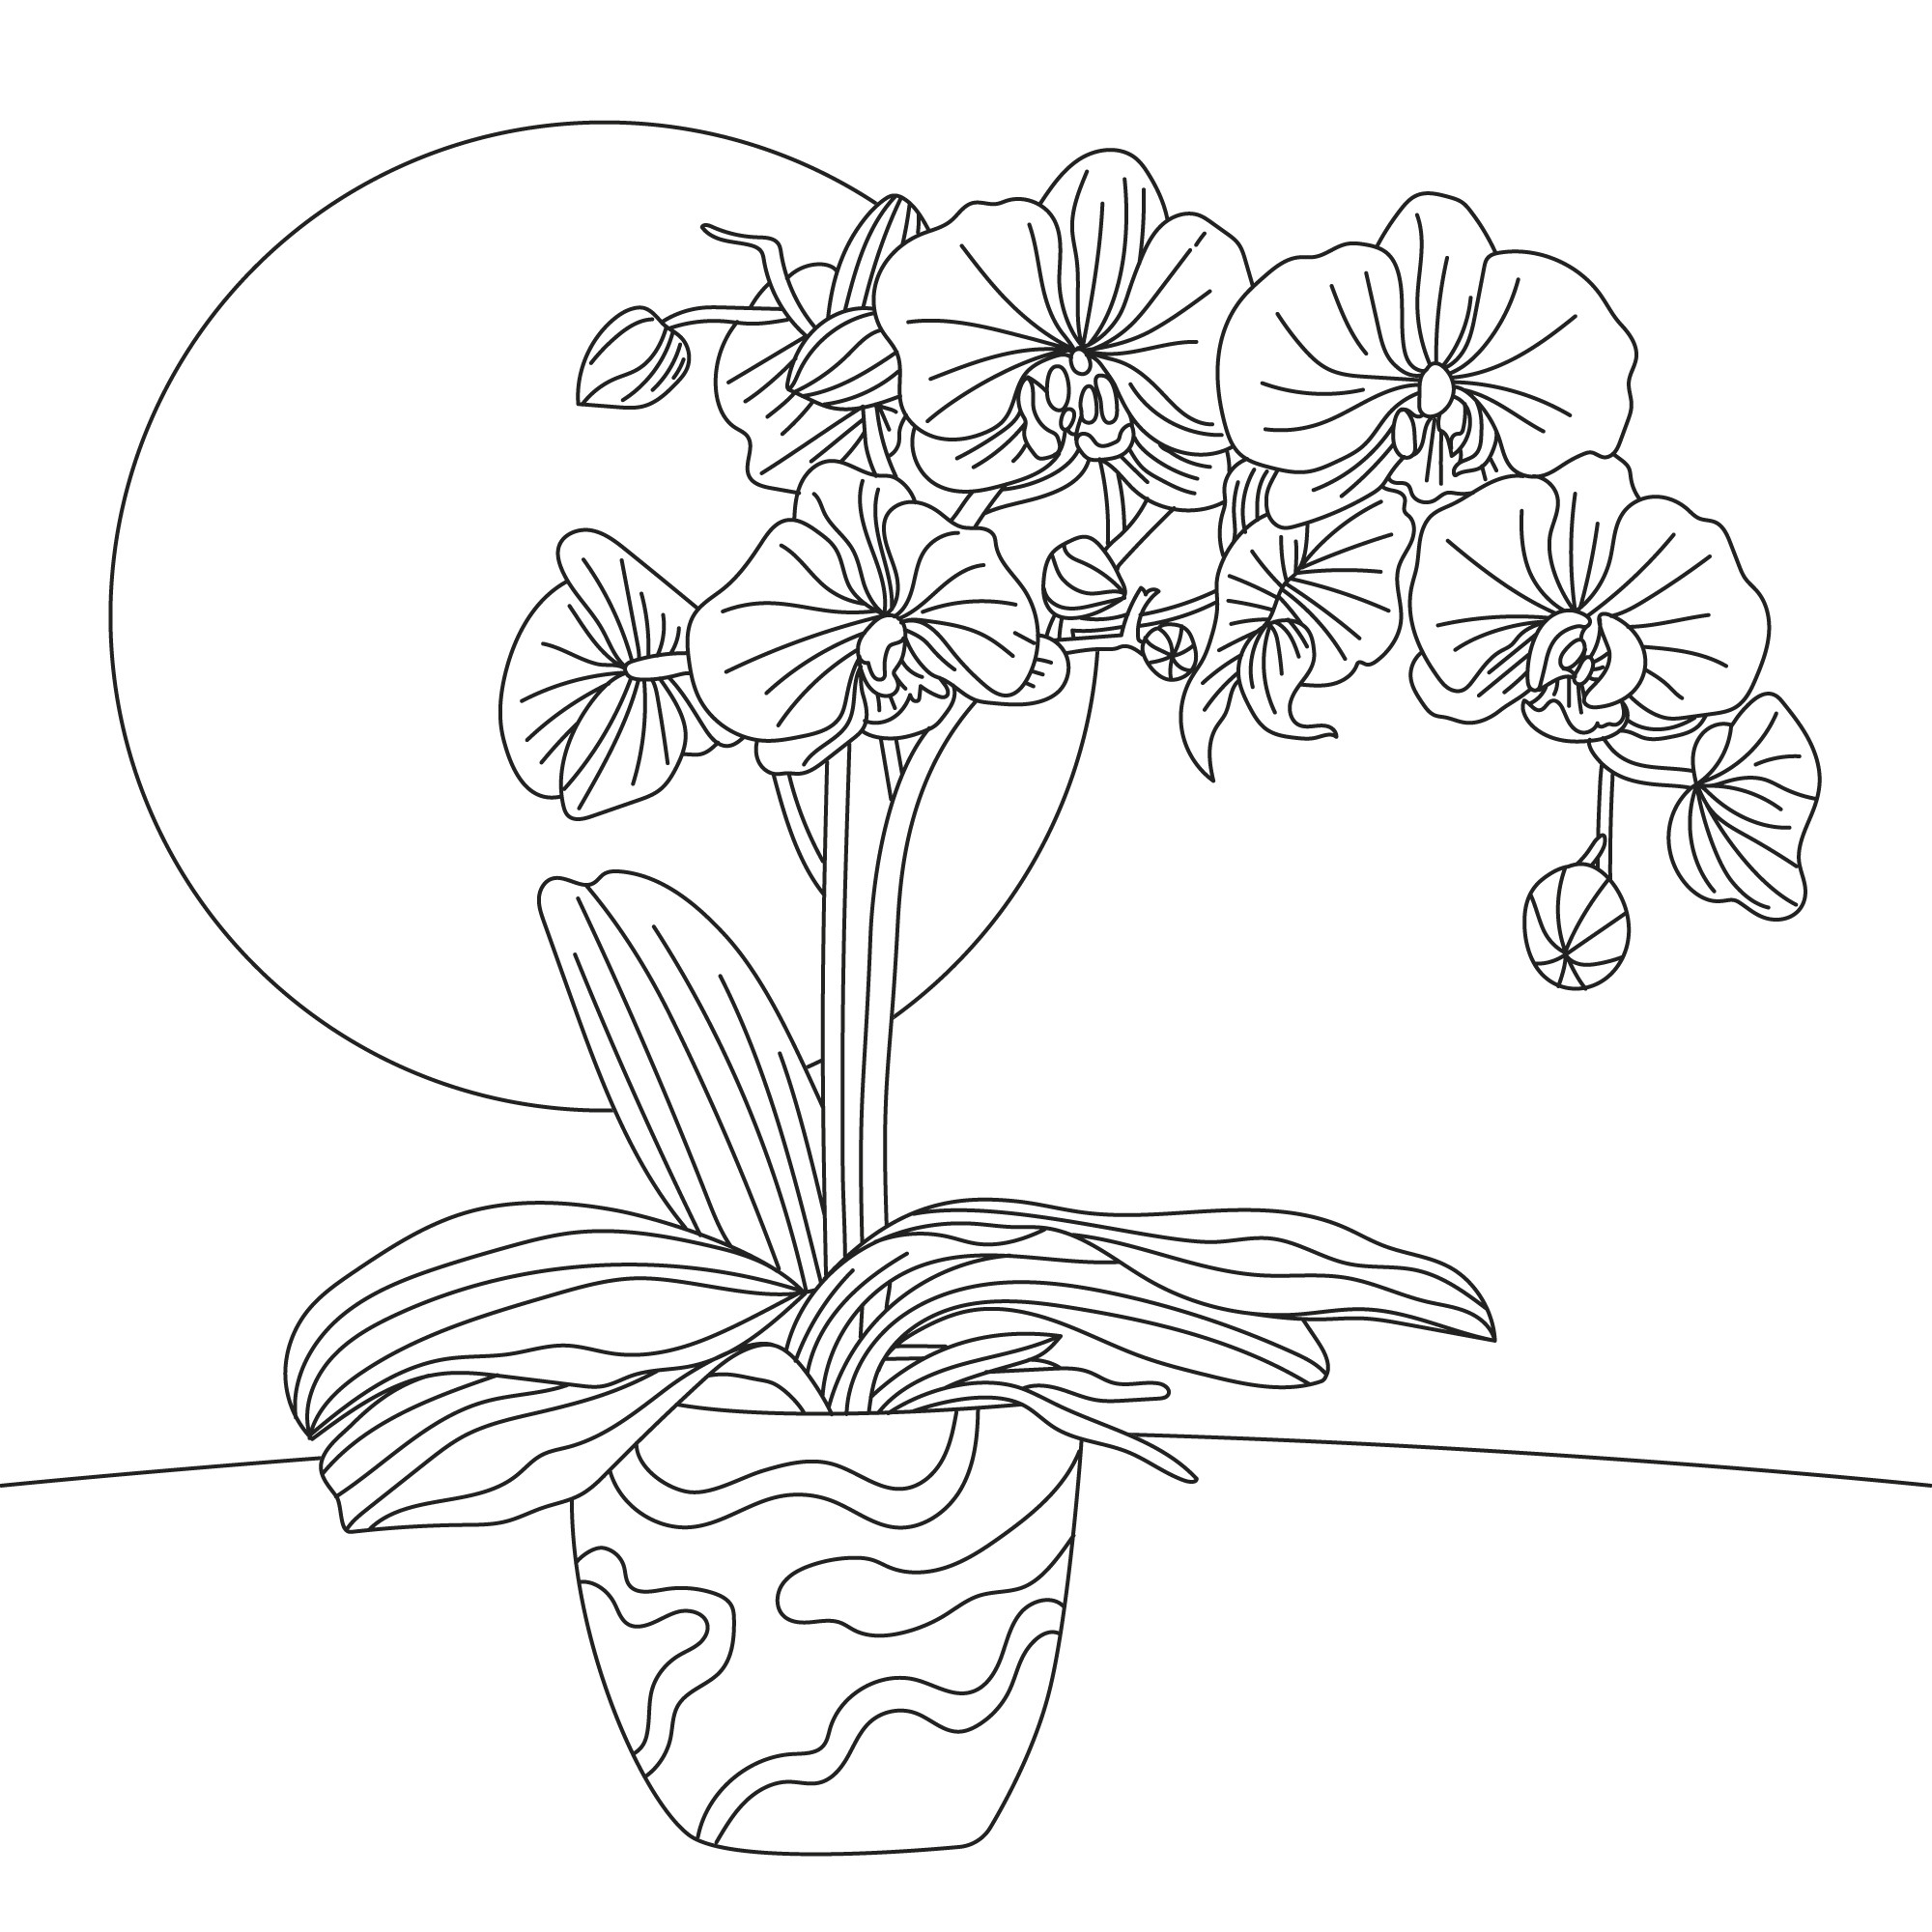 Раскраска для детей: цветок орхидеи в горшке